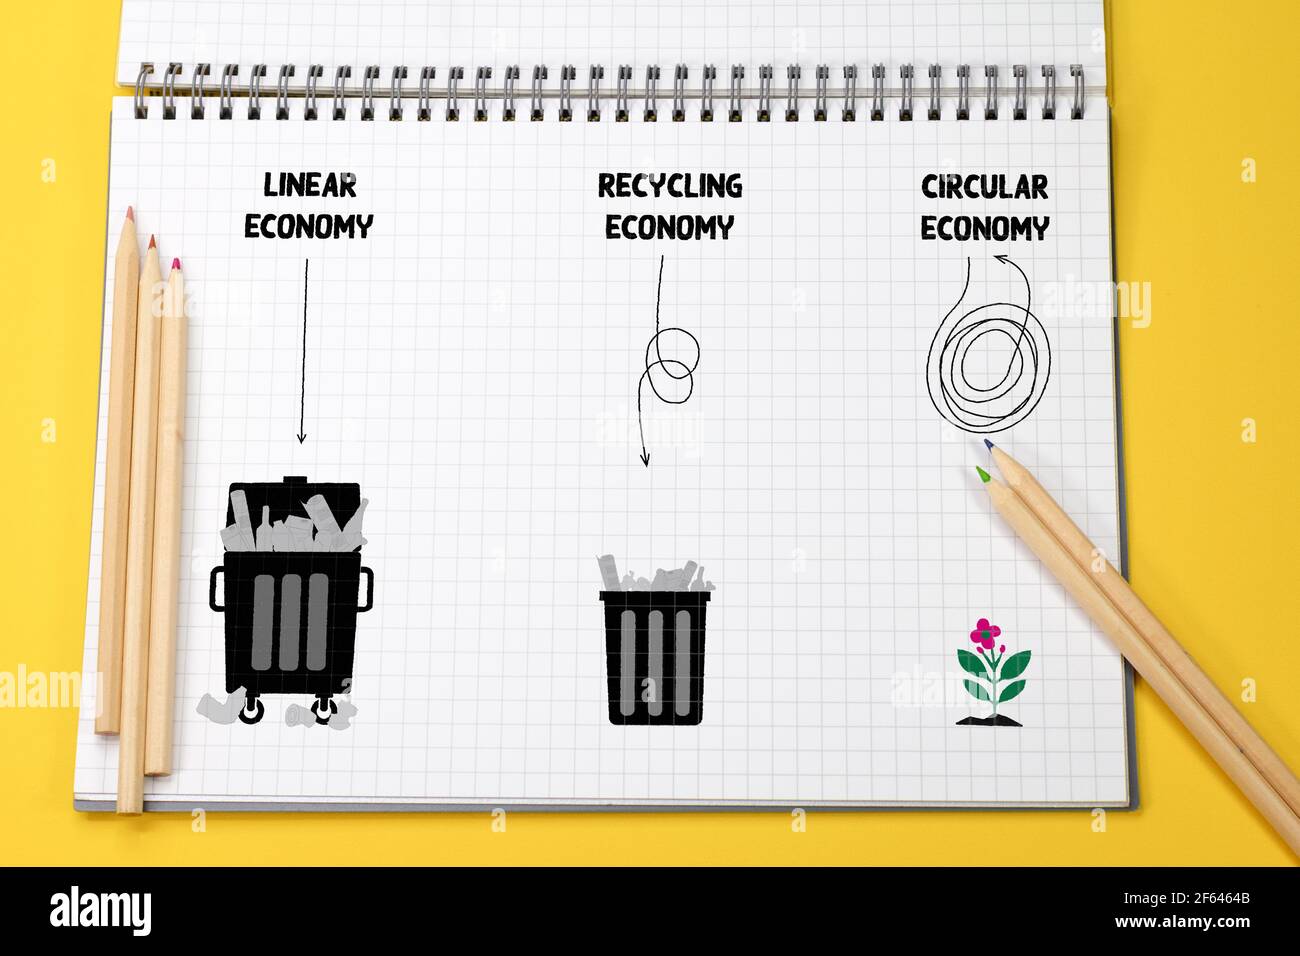 Linear, Recycling et Circular Economics illustré en utilisant les poubelles, faire, utiliser, réutiliser, refaire, recycler les ressources pour une consommation durable Banque D'Images